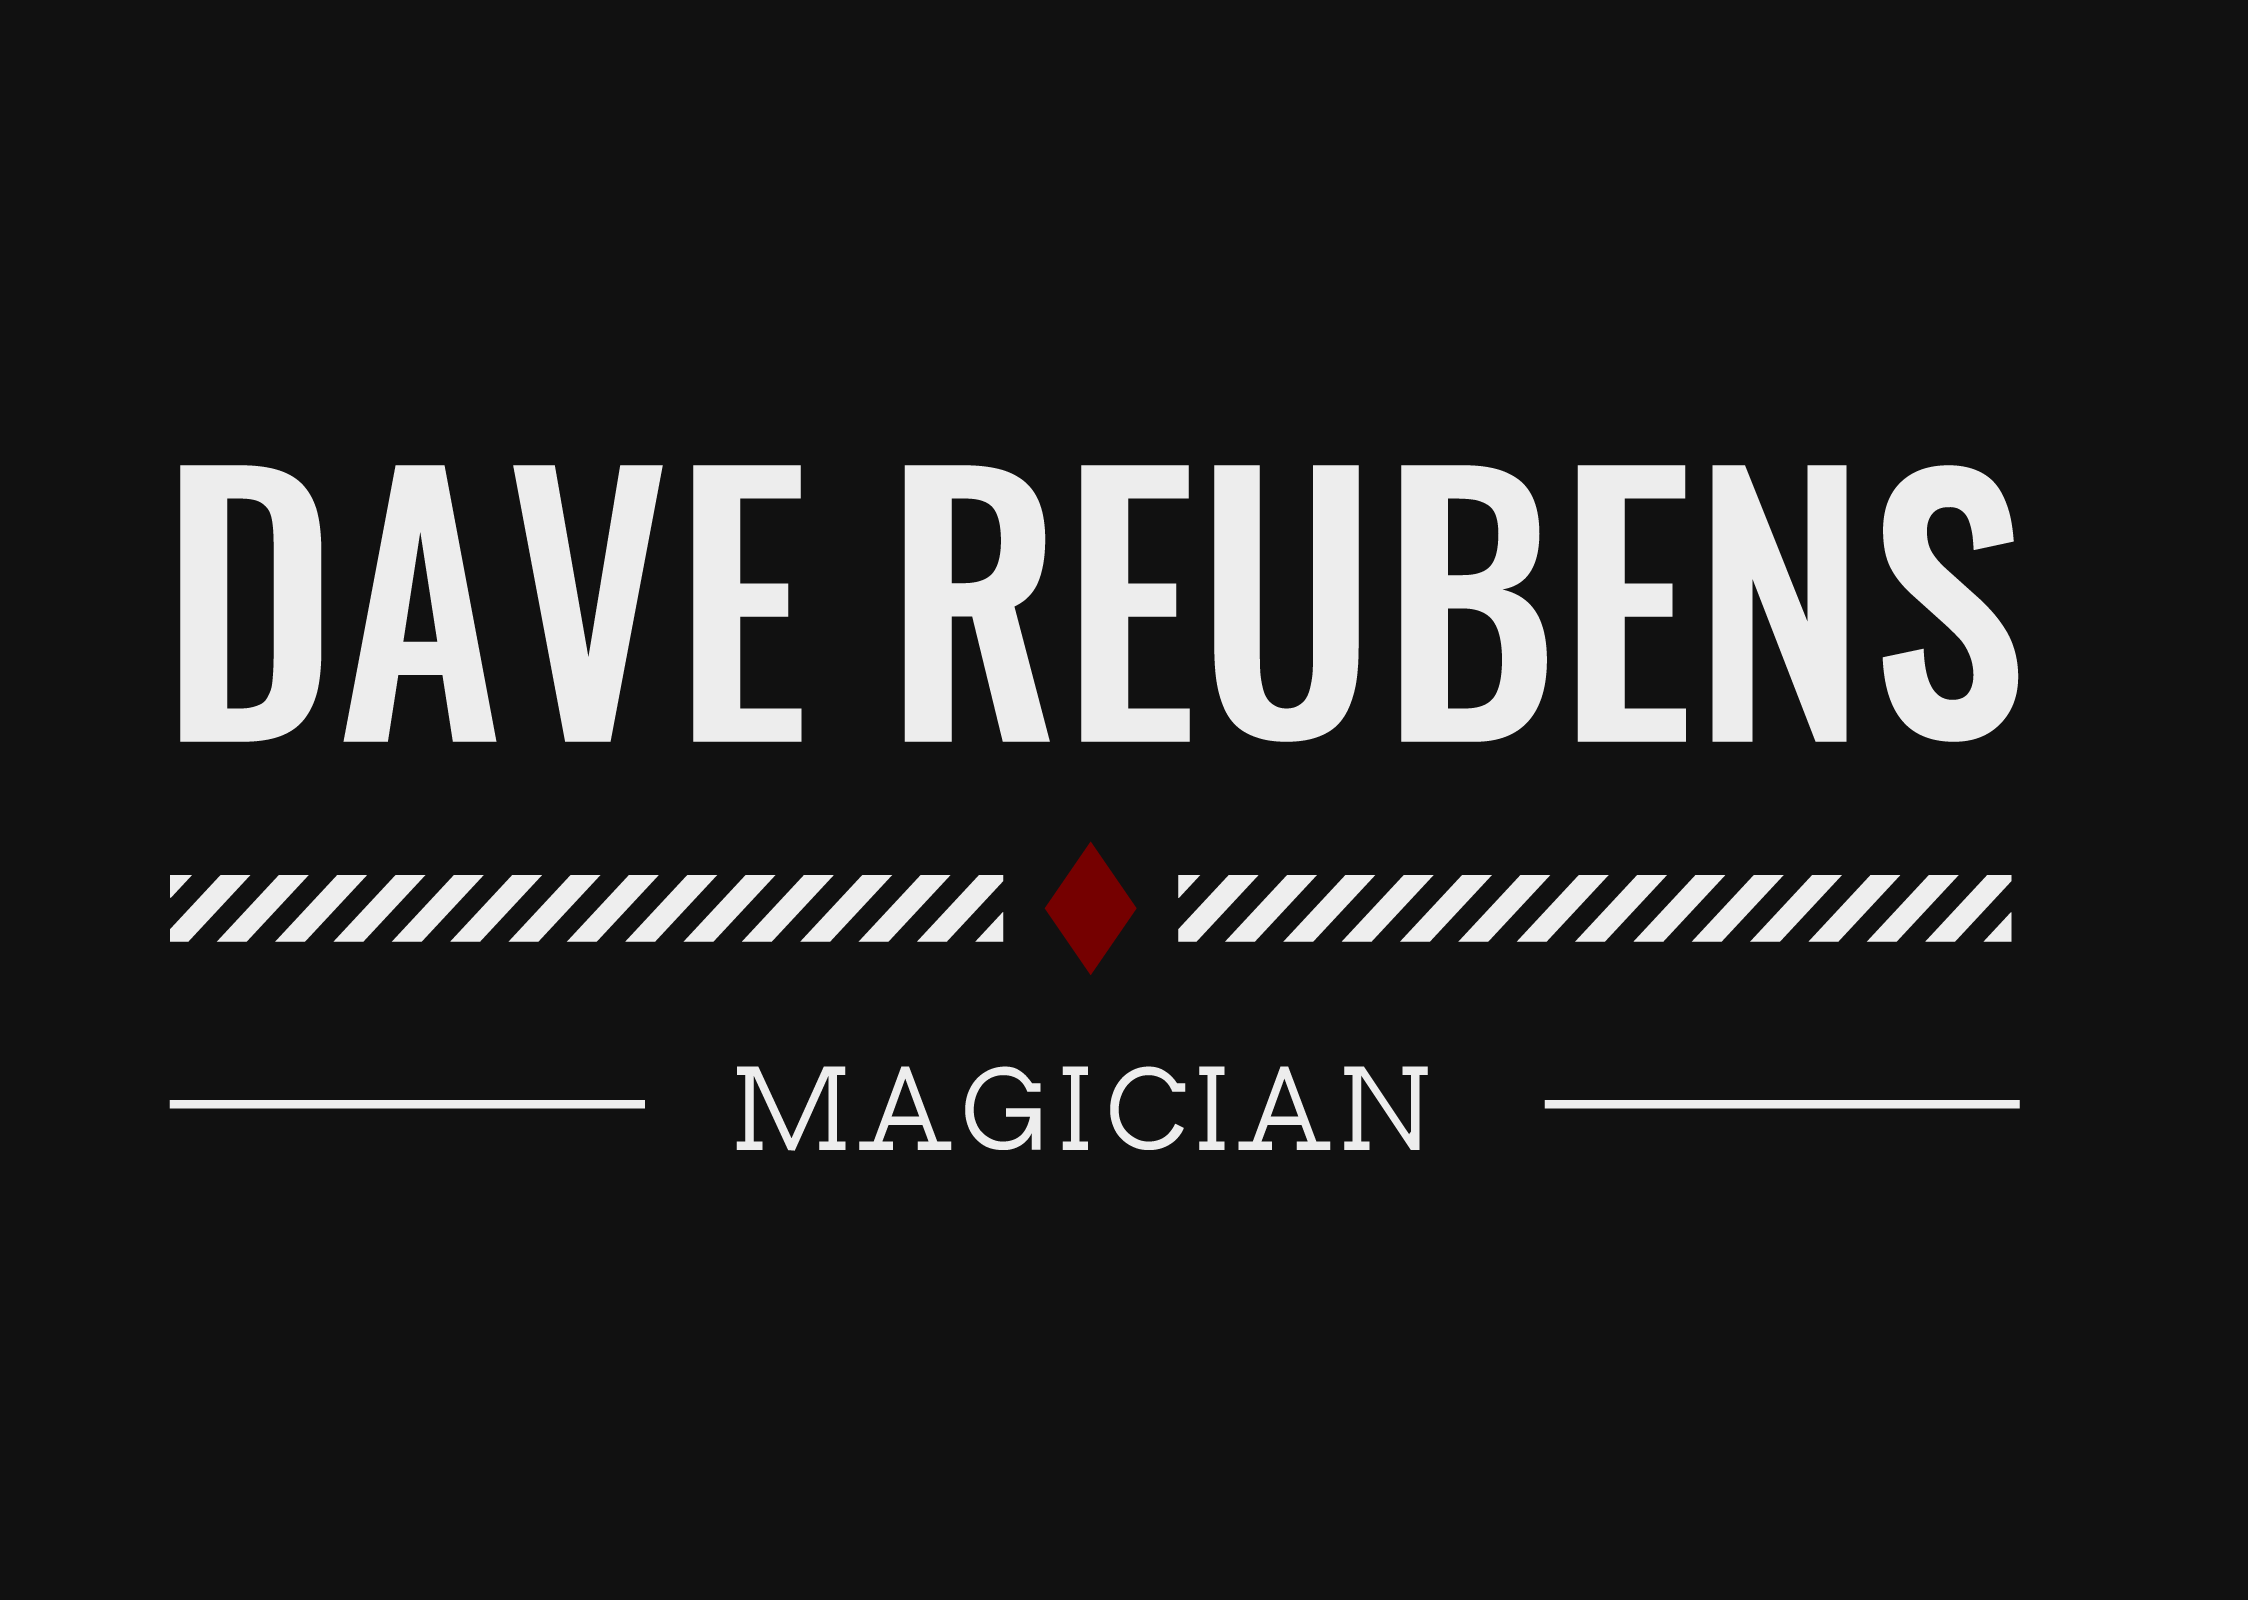 Dave Reubens - The Edinburgh Magician